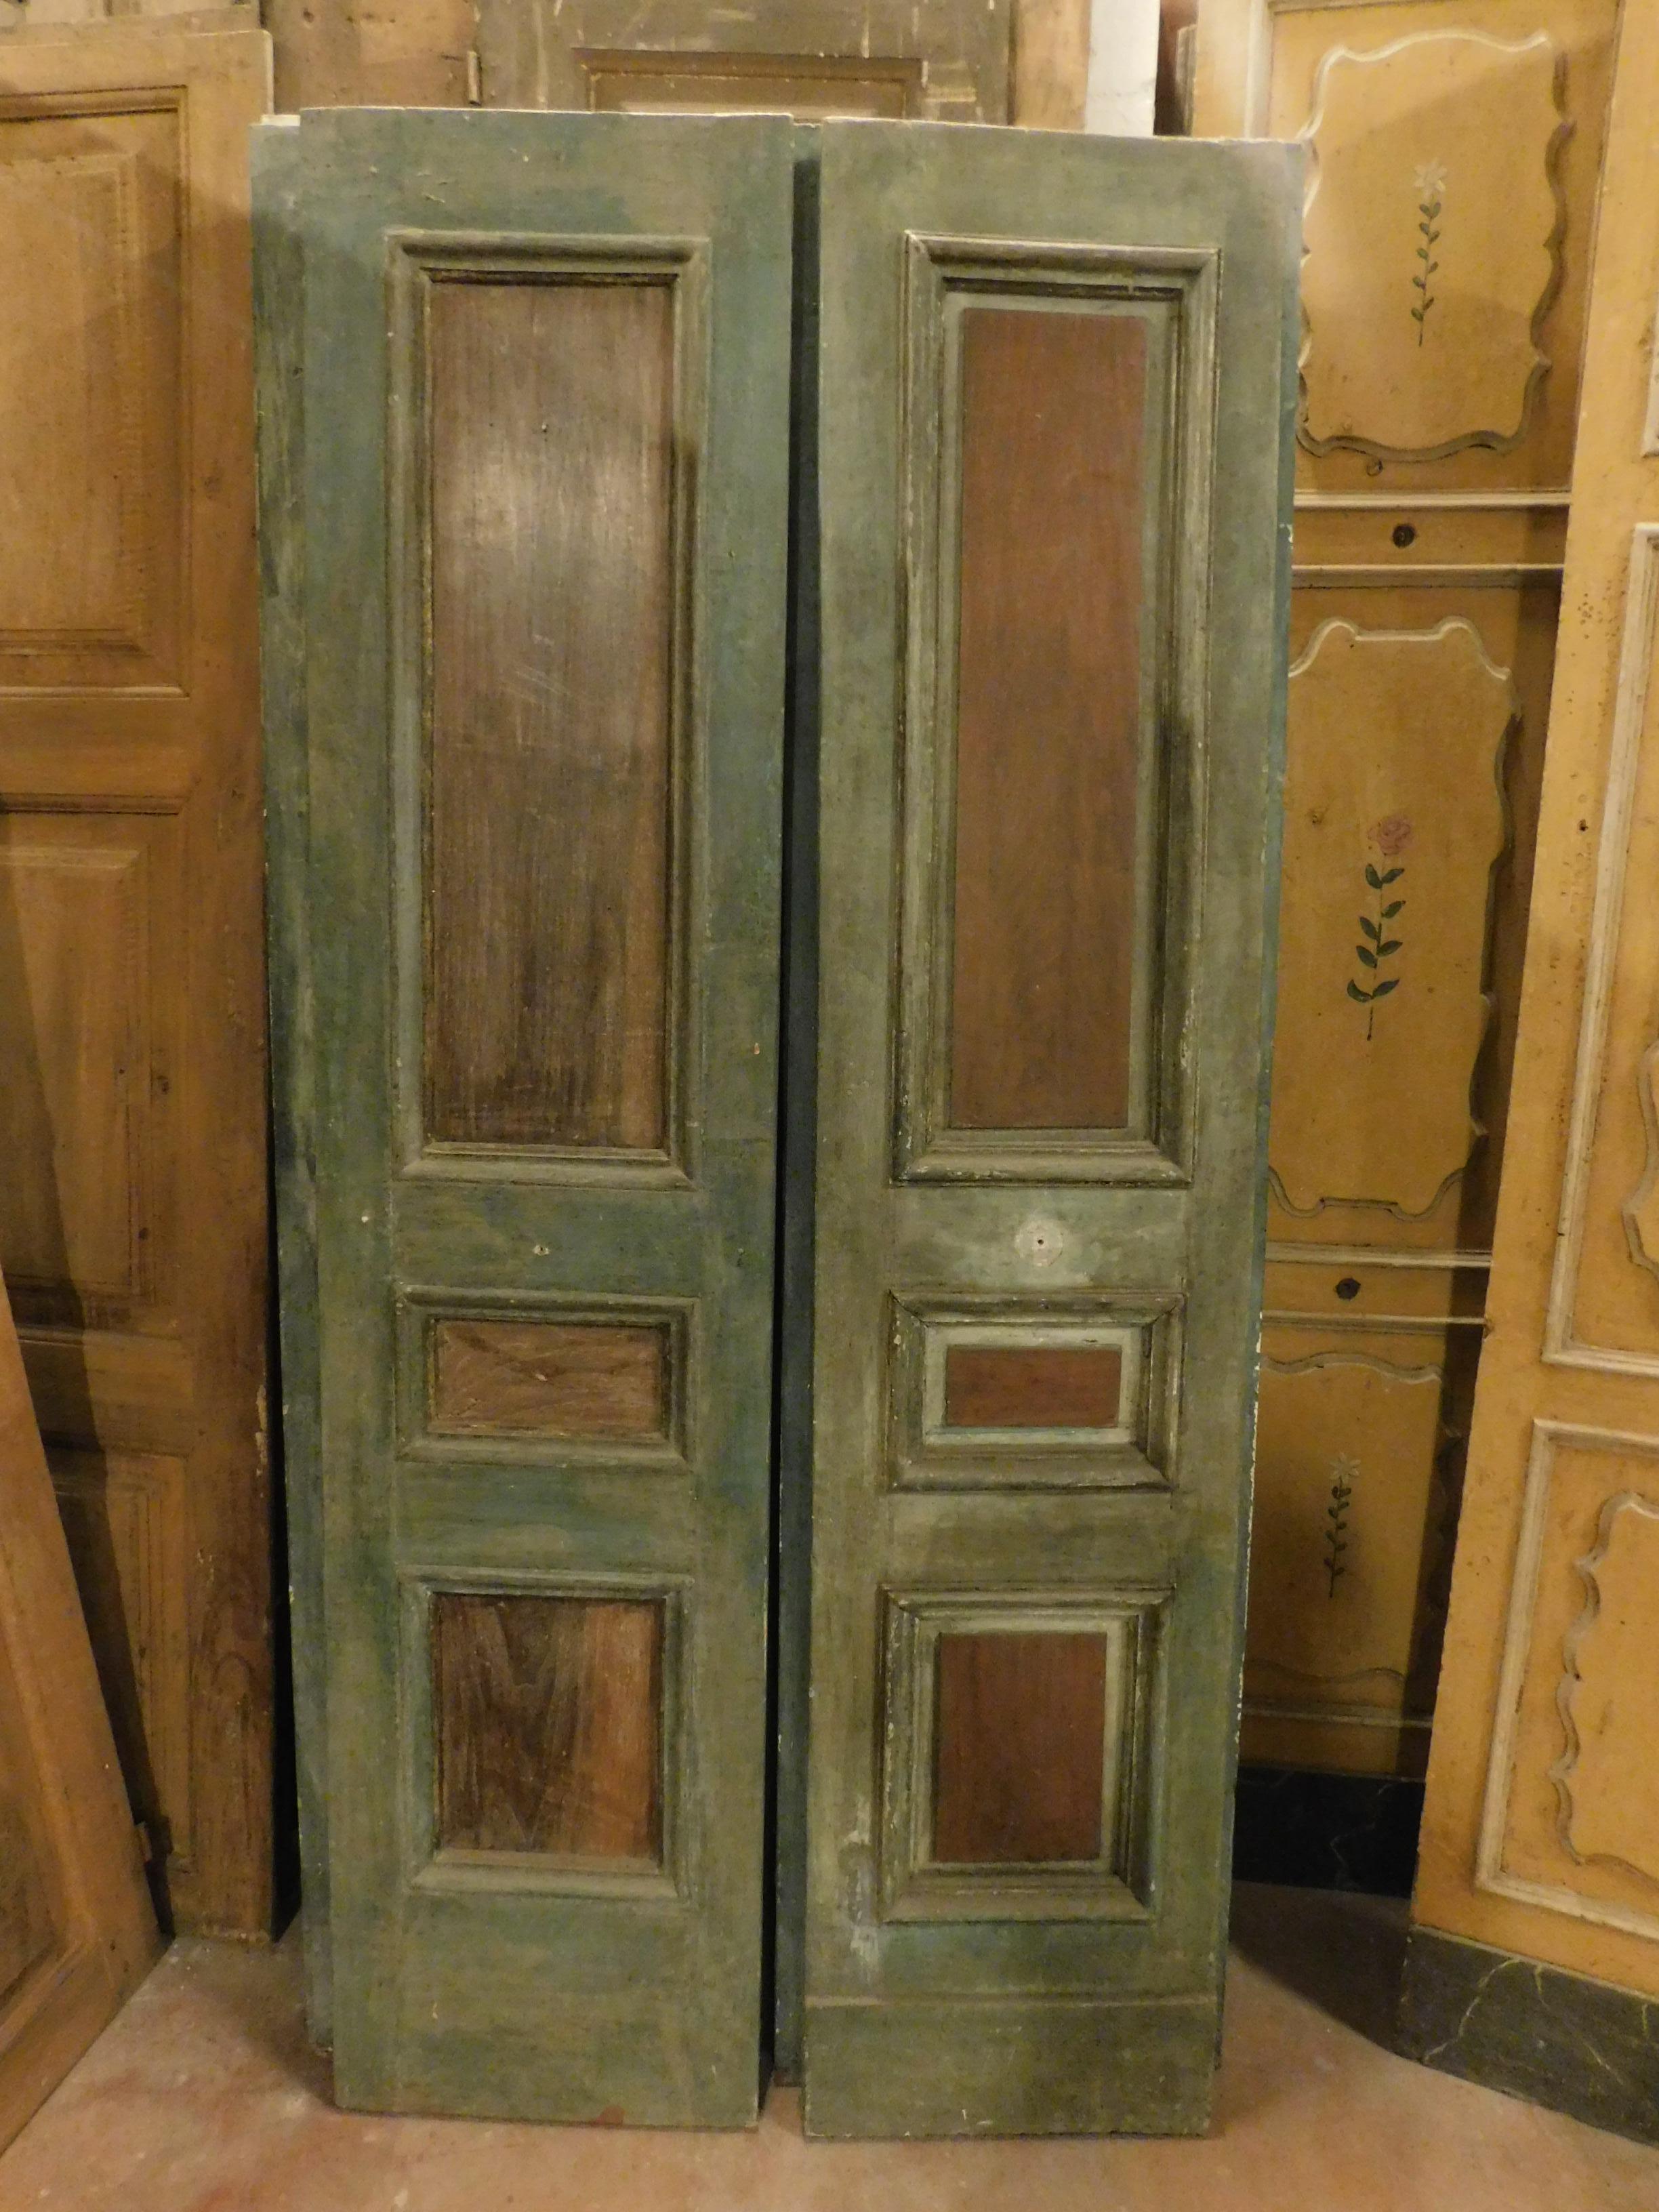 Ancienne paire de doubles portes en bois, panneaux laissés en couleur bois
 et avec seulement de la molure laquée verte, ce sont deux couples sans cadre, beaux devant et derrière, fabriqués au 19ème siècle par un artisan italien.
Ils peuvent être